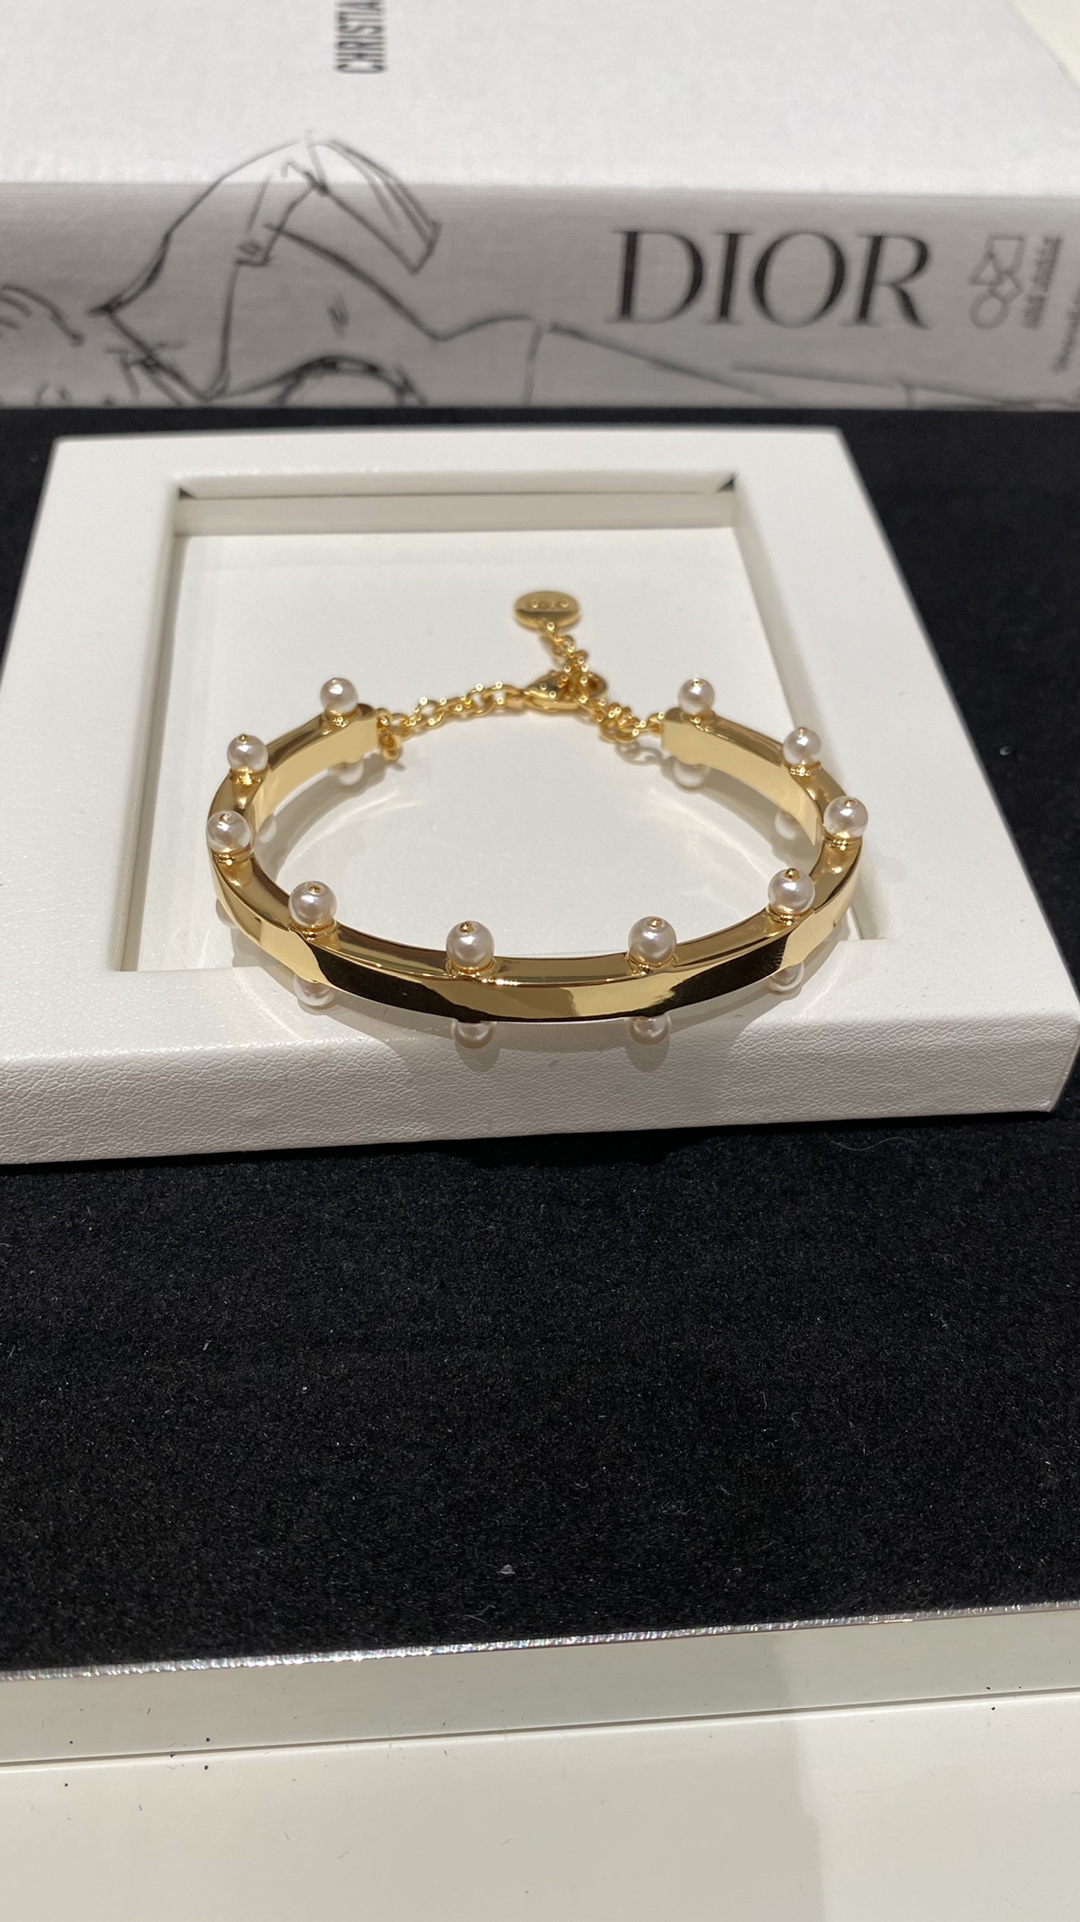 Dior Jewelry Bracelet Replicas Buy Special